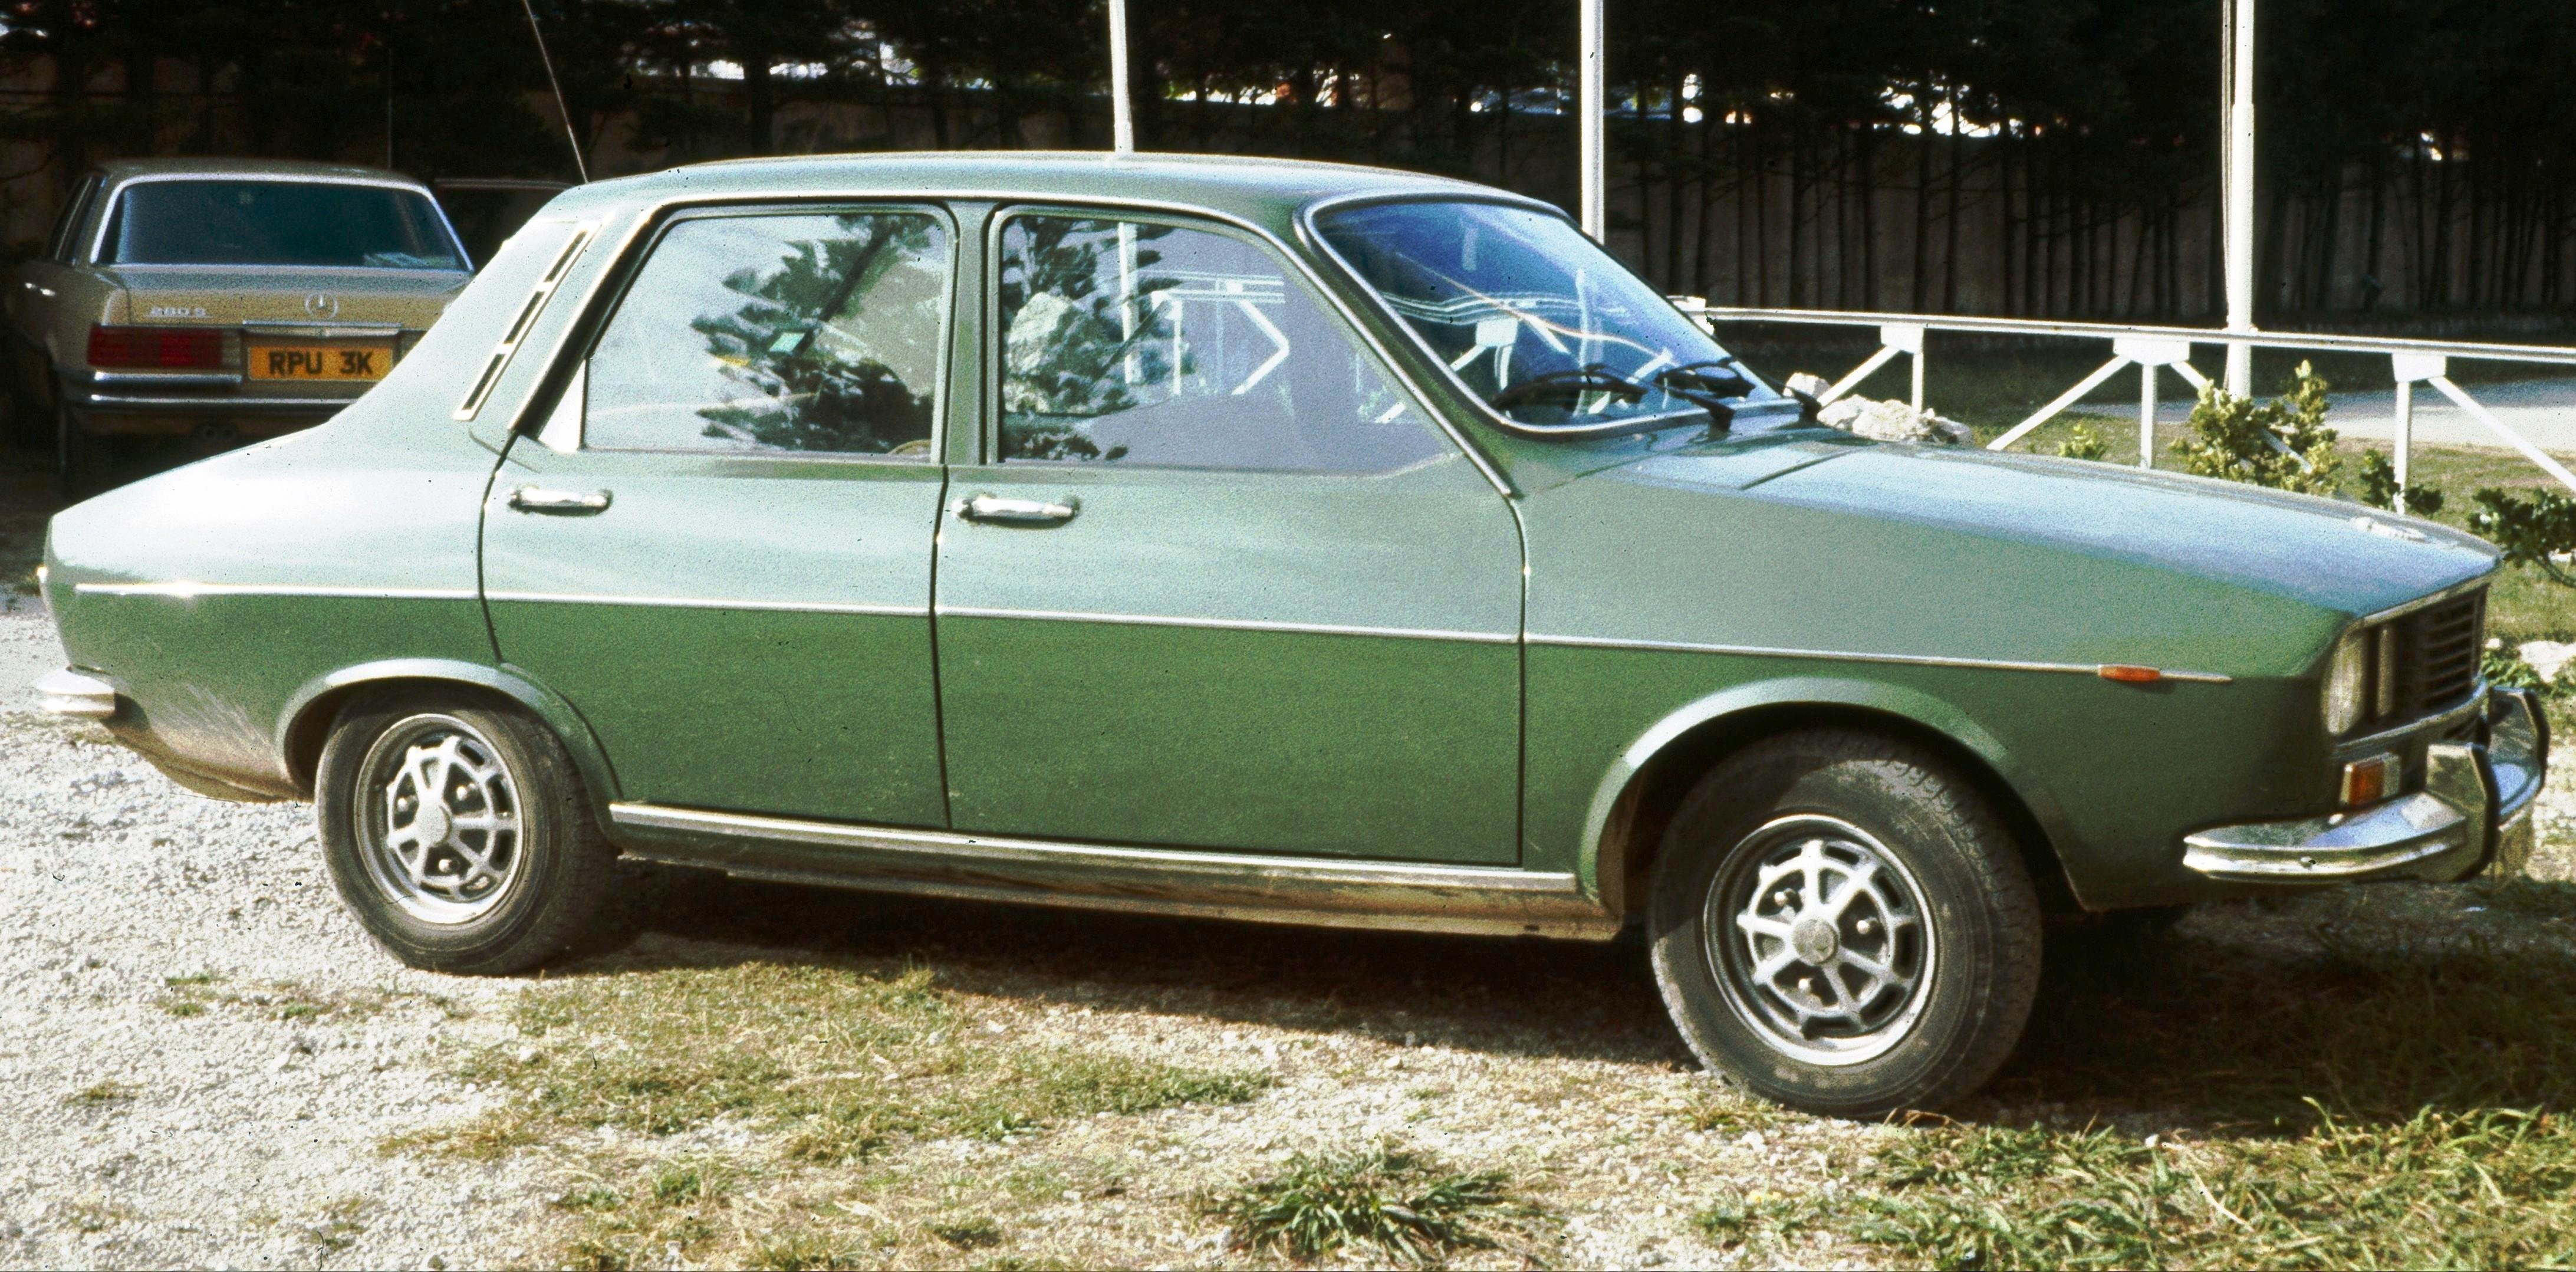 Renault_12_in_green_1972.jpg